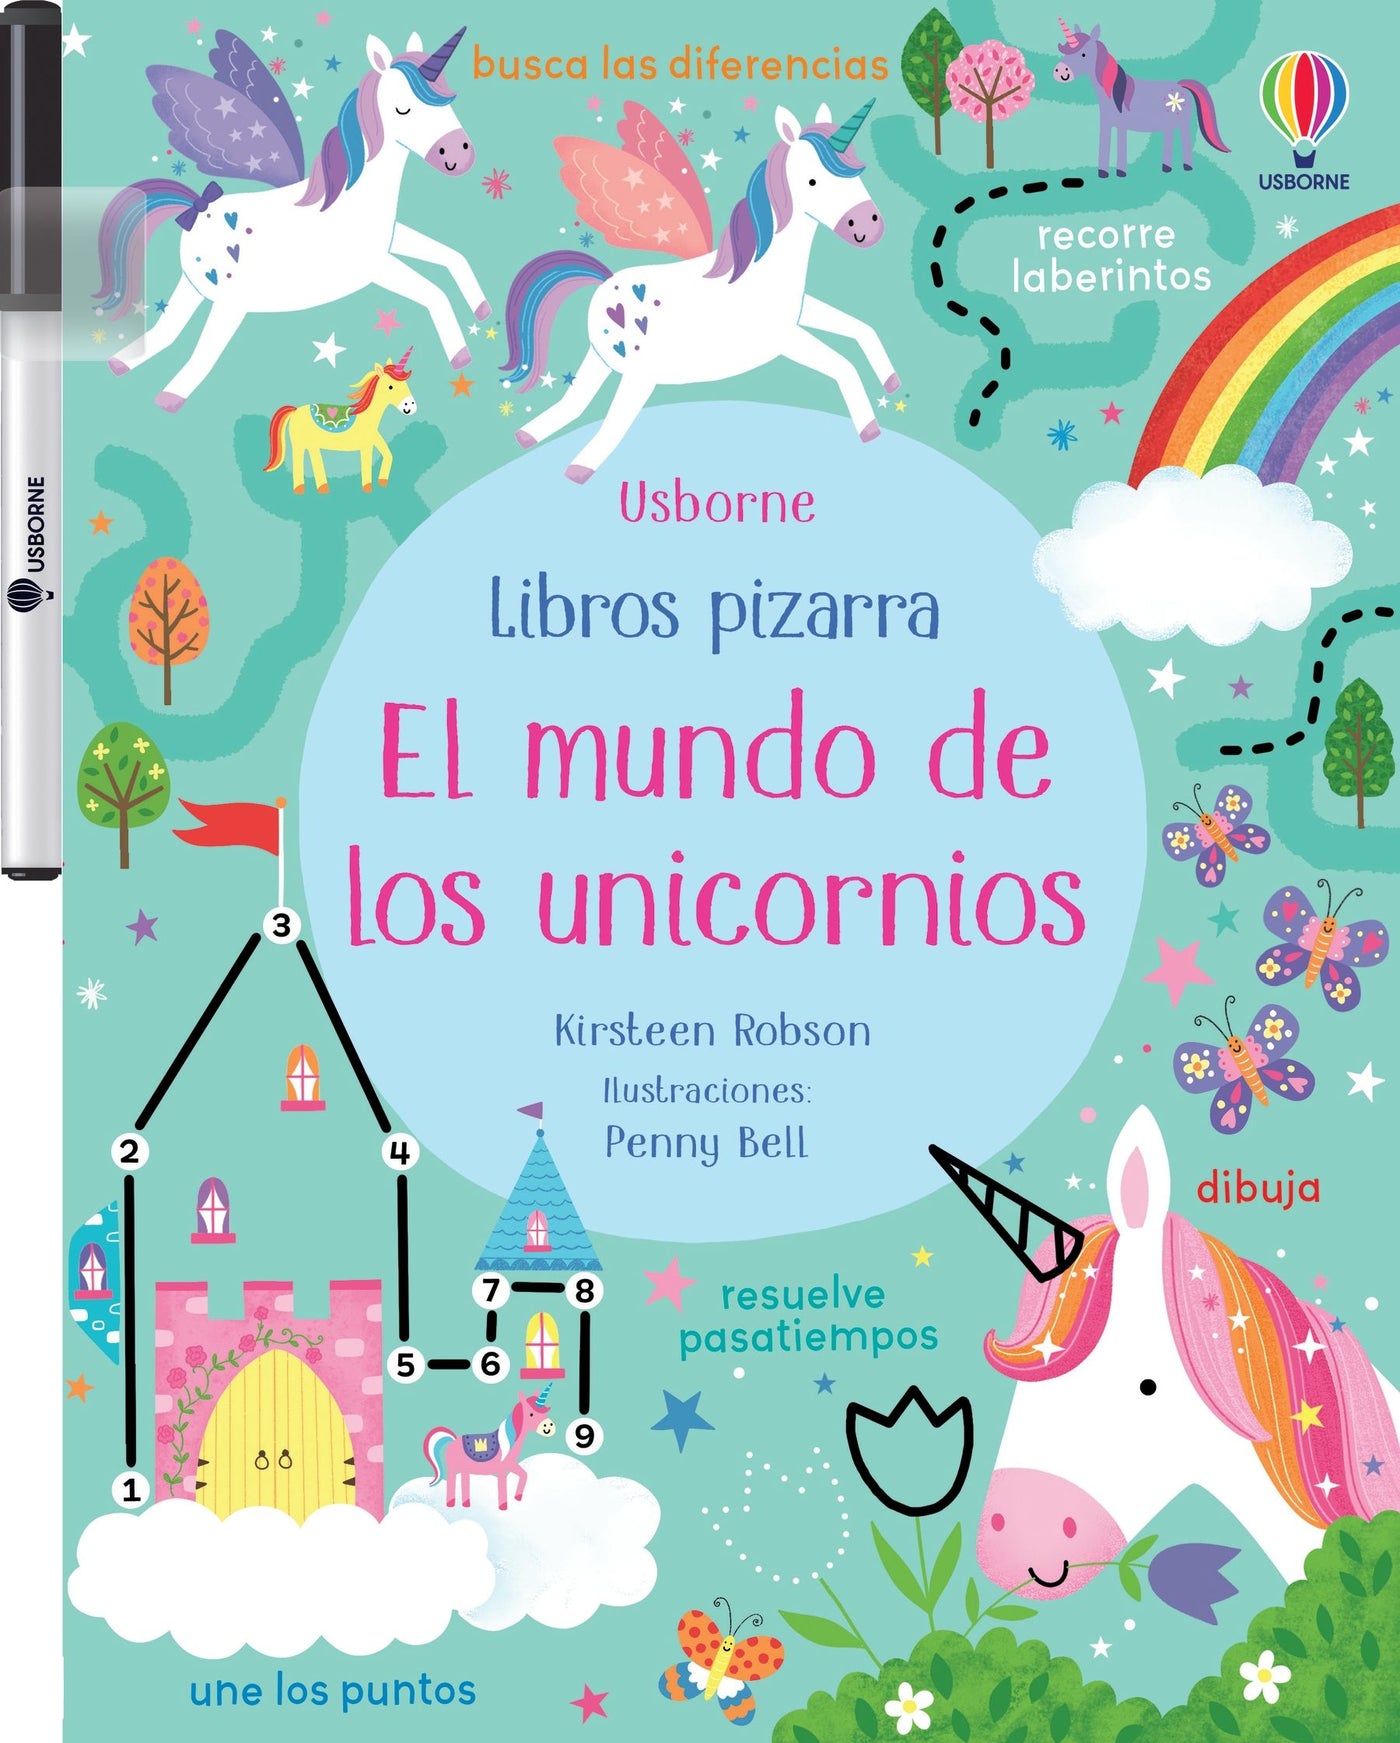 El mundo de los unicornios- Libro pizarra